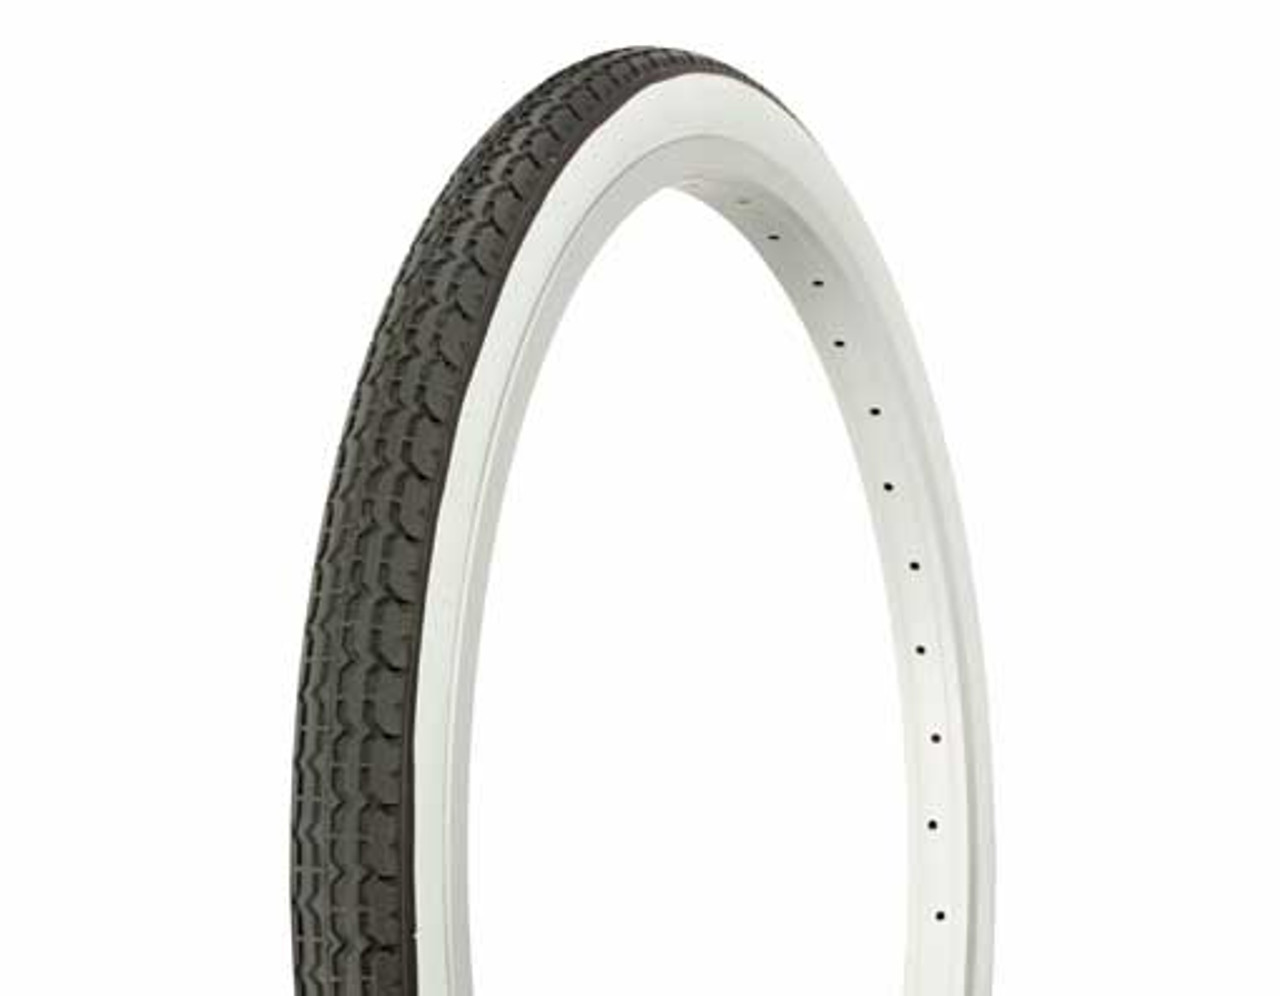 26 x 1.75 white wall bike tires